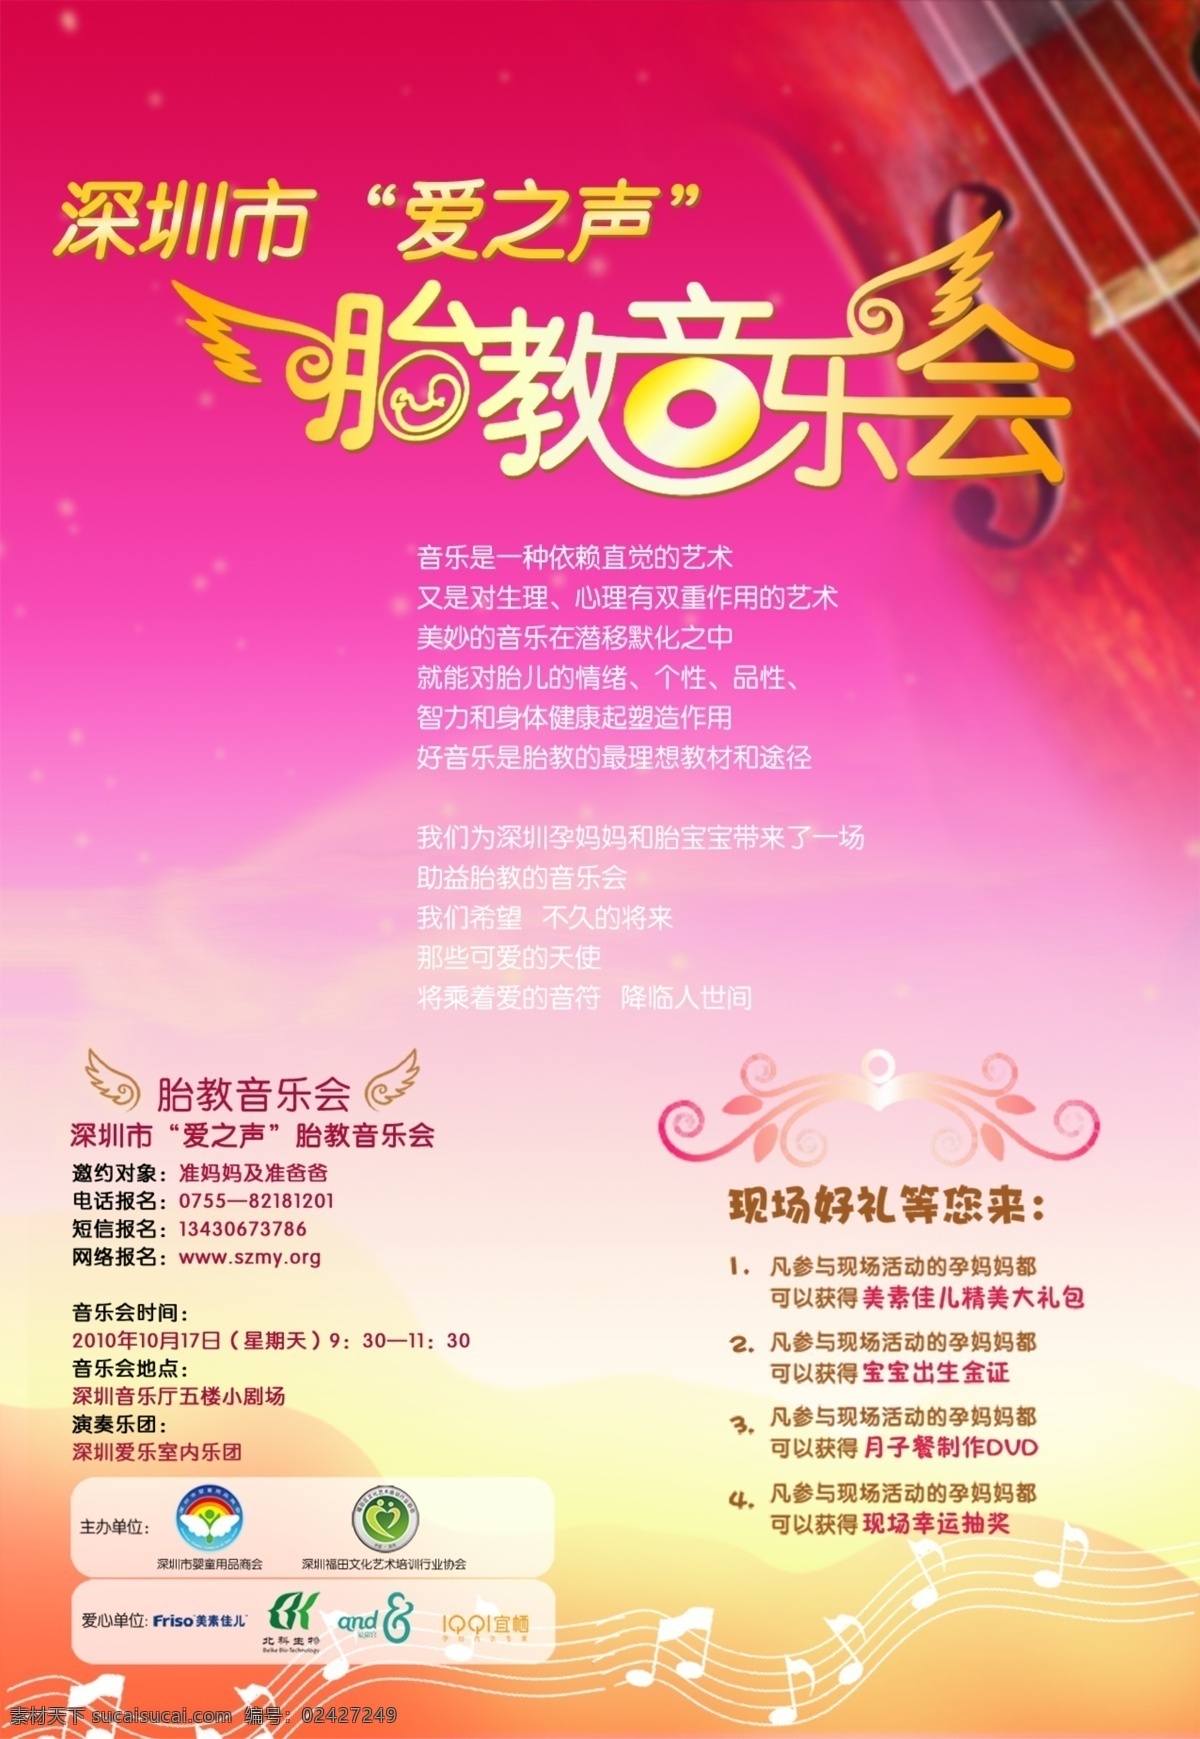 深圳 胎教 音乐会 宣传 胎教音乐会 孕妇 孕婴童 专题网页 活动 海报 广告设计模板 源文件